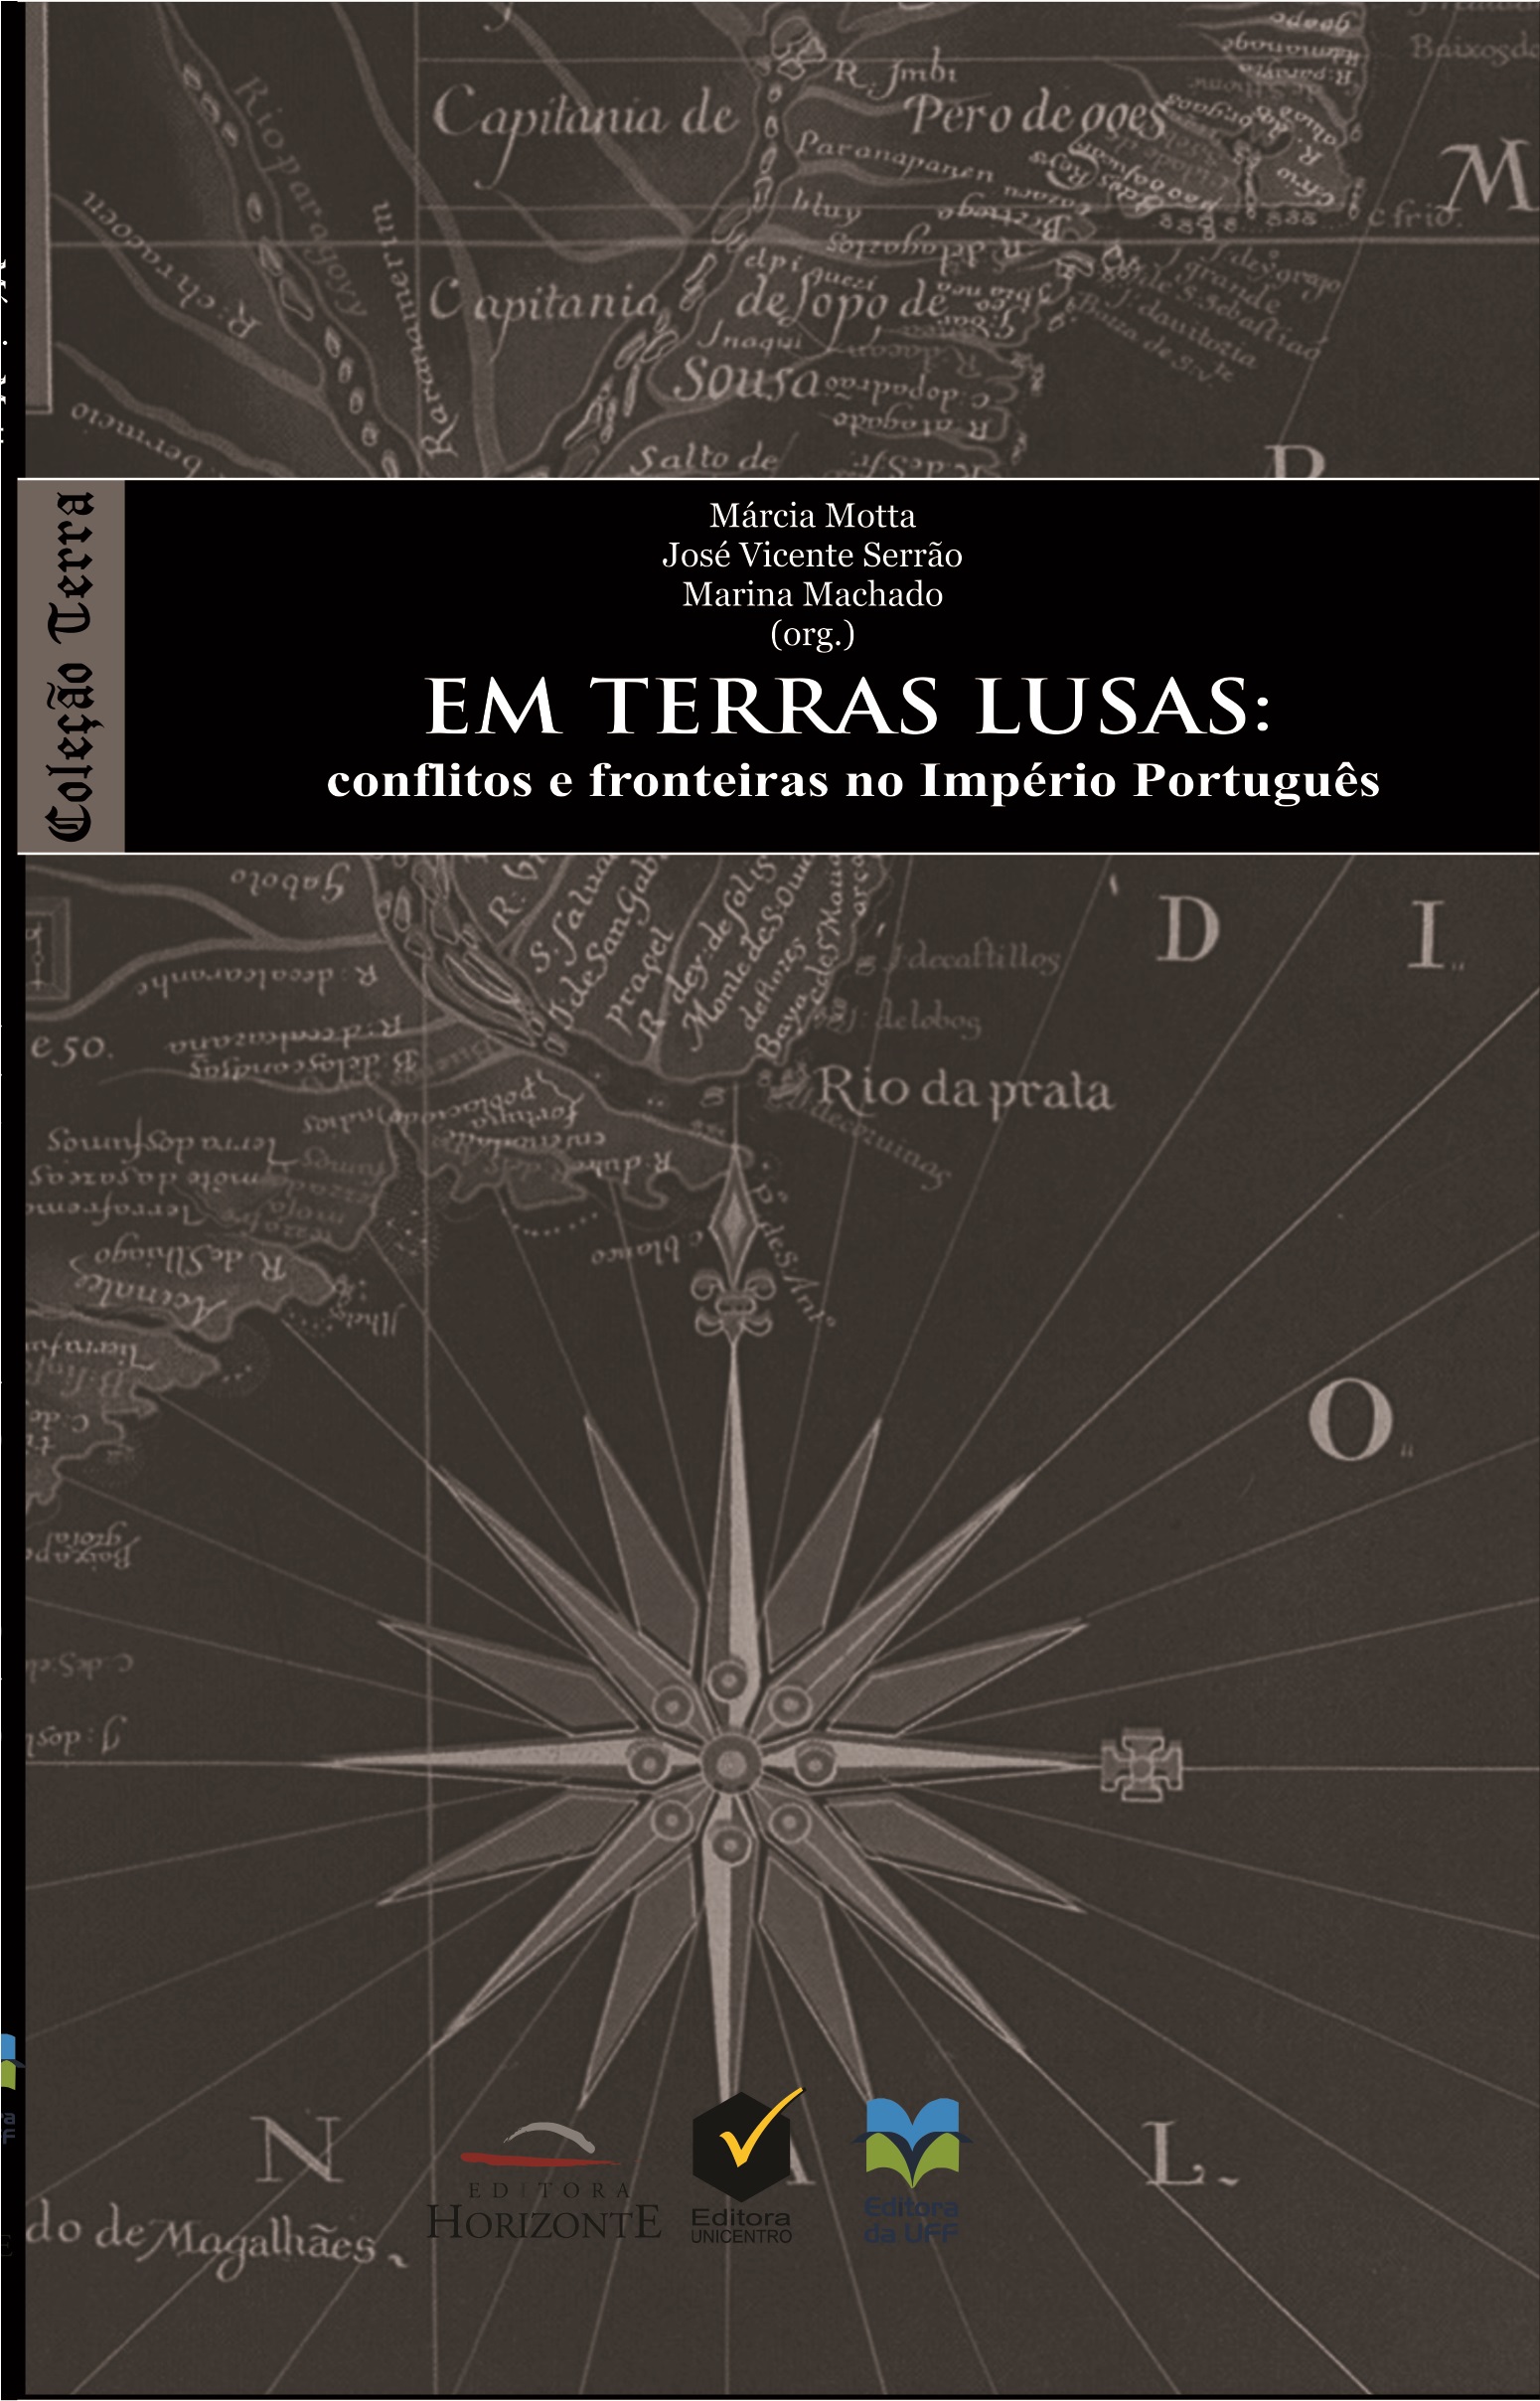 Em terras lusas: conflitos e fronteiras no Império Português